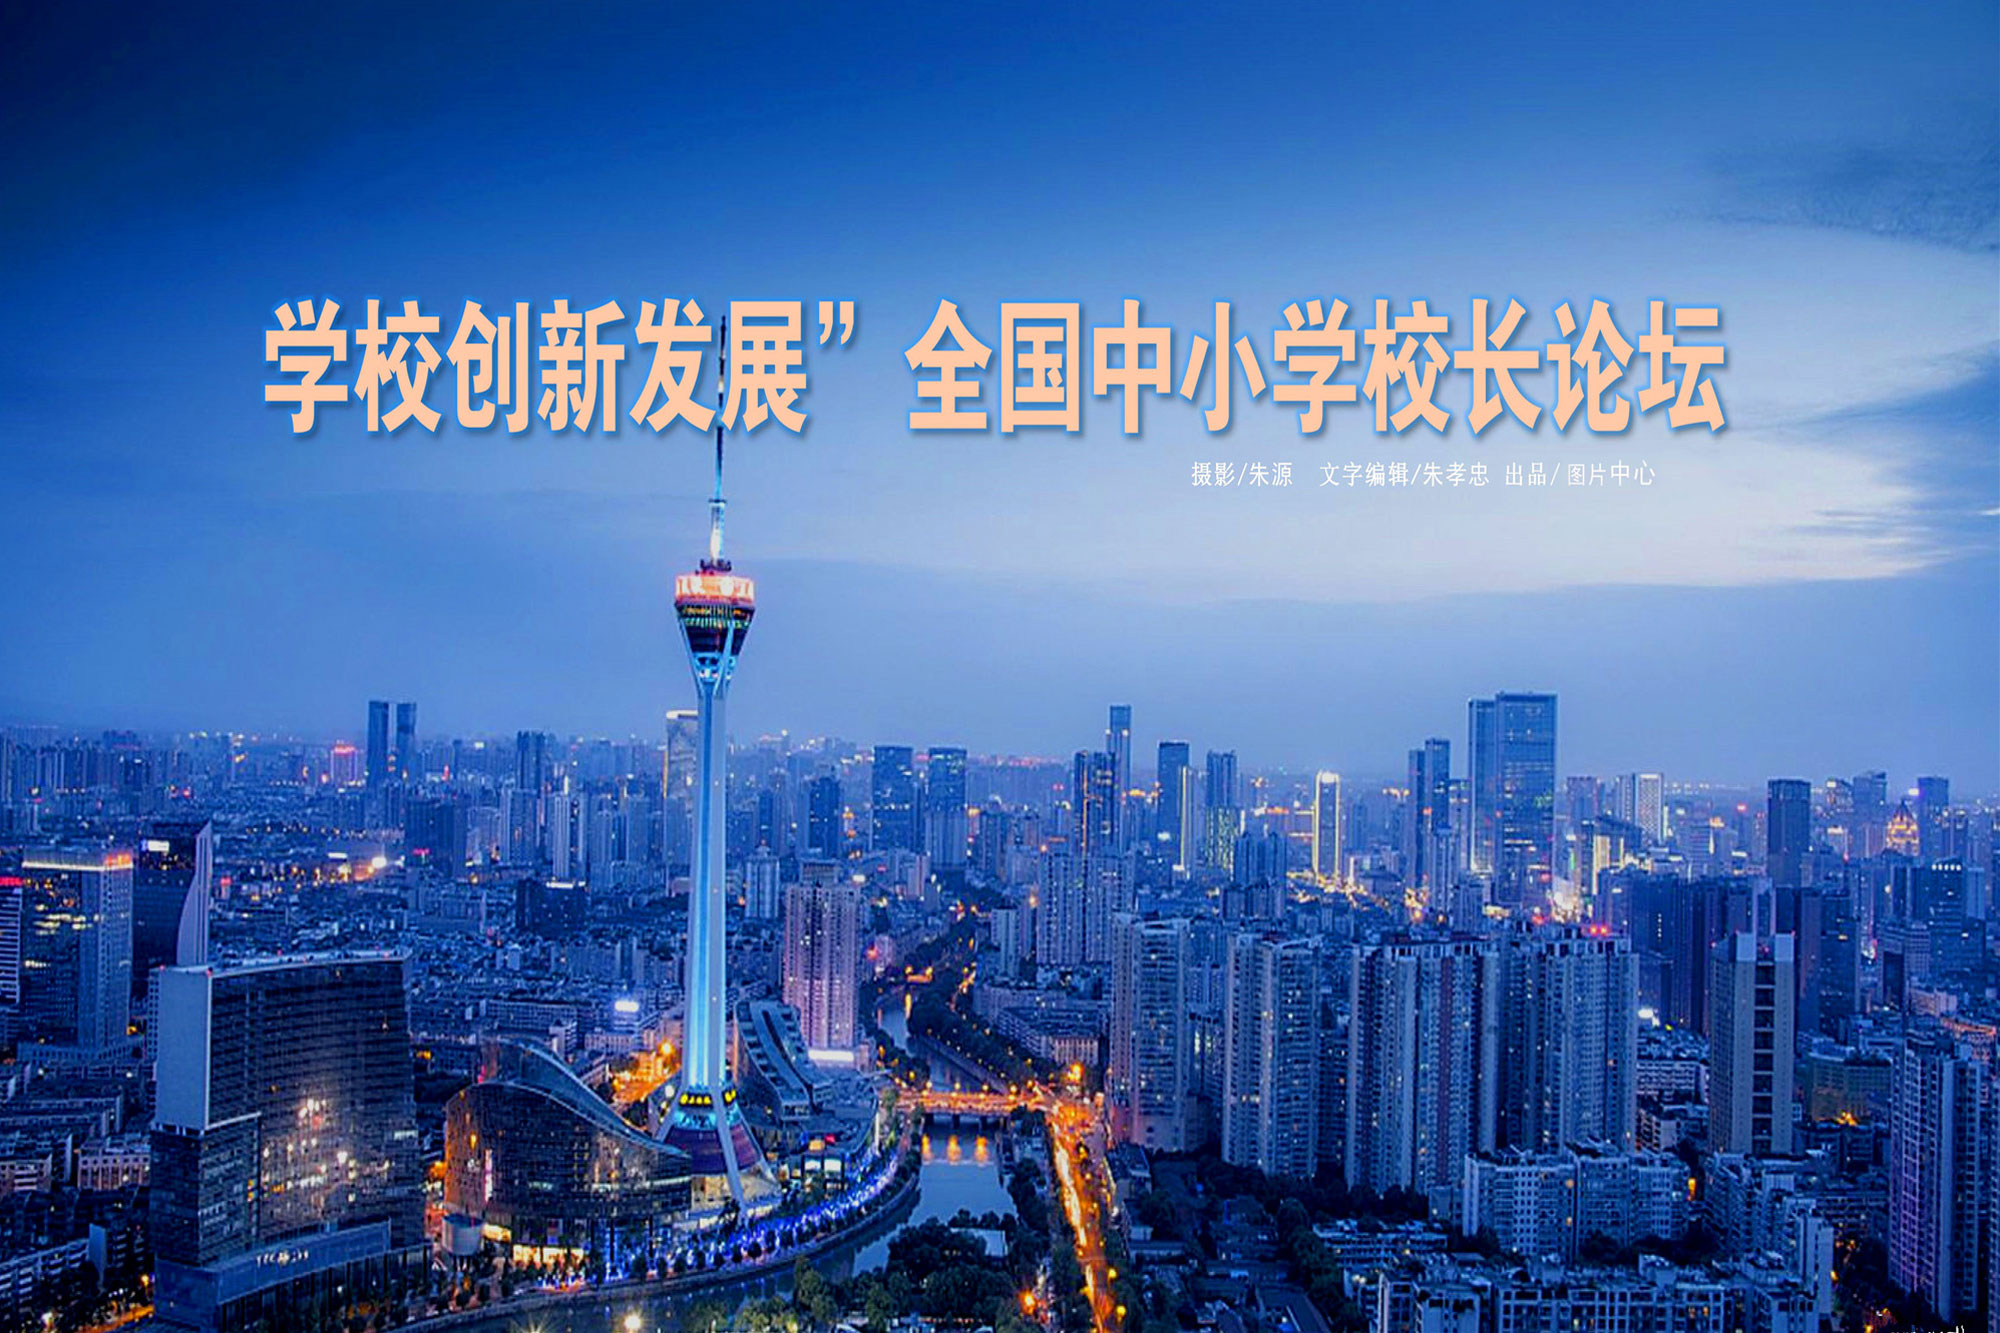 由北京中教市培教育研究院与成都市成华区教育科学研究院联合举办的“学校创新发展”全国中小学校长高峰论坛于2019年4月22日落下帷幕。